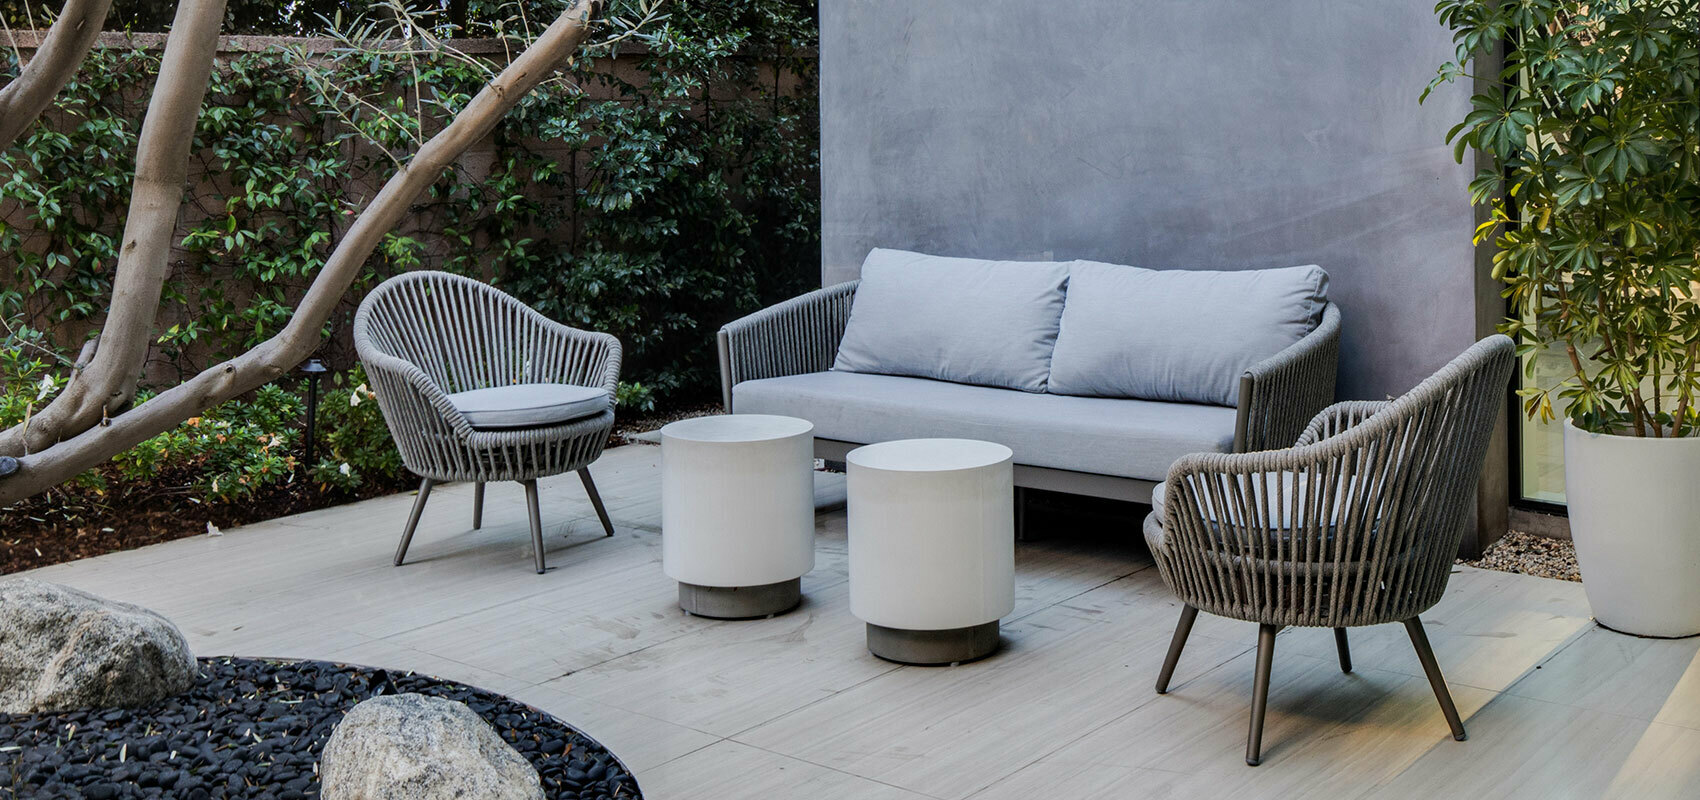 New Garden Outdoor Furniture Qatar